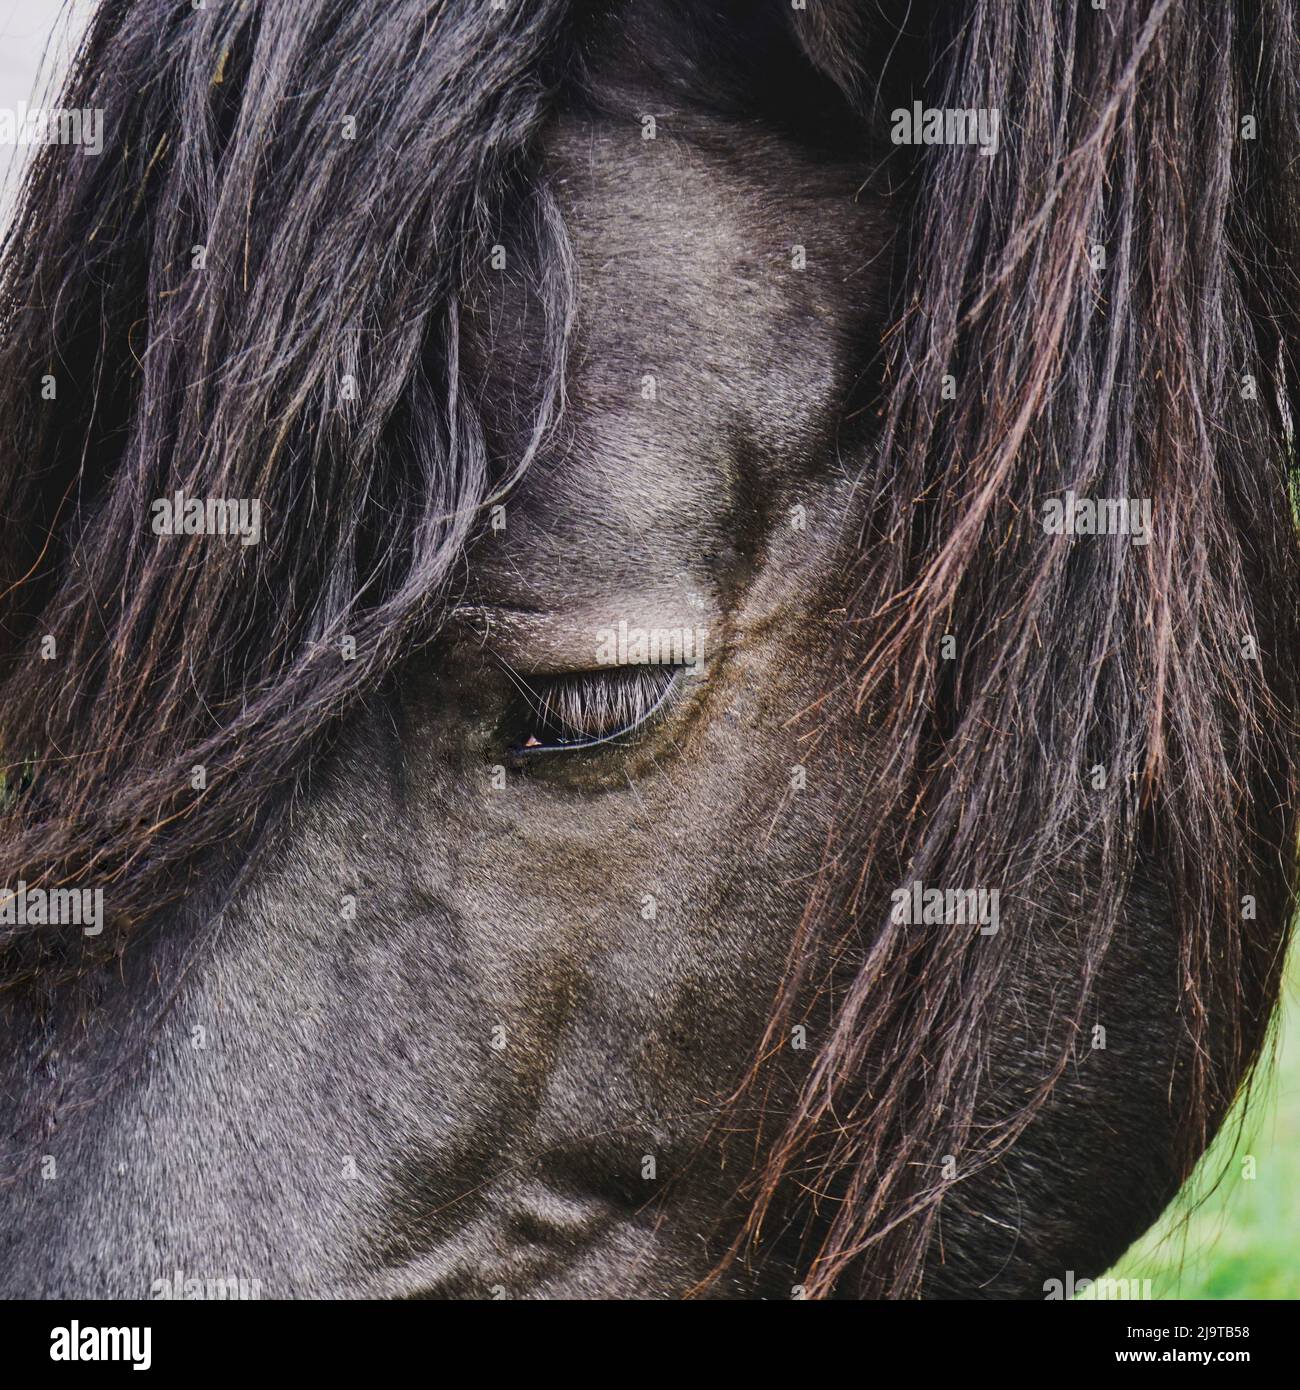 portrait de cheval brun, thèmes animaux Banque D'Images